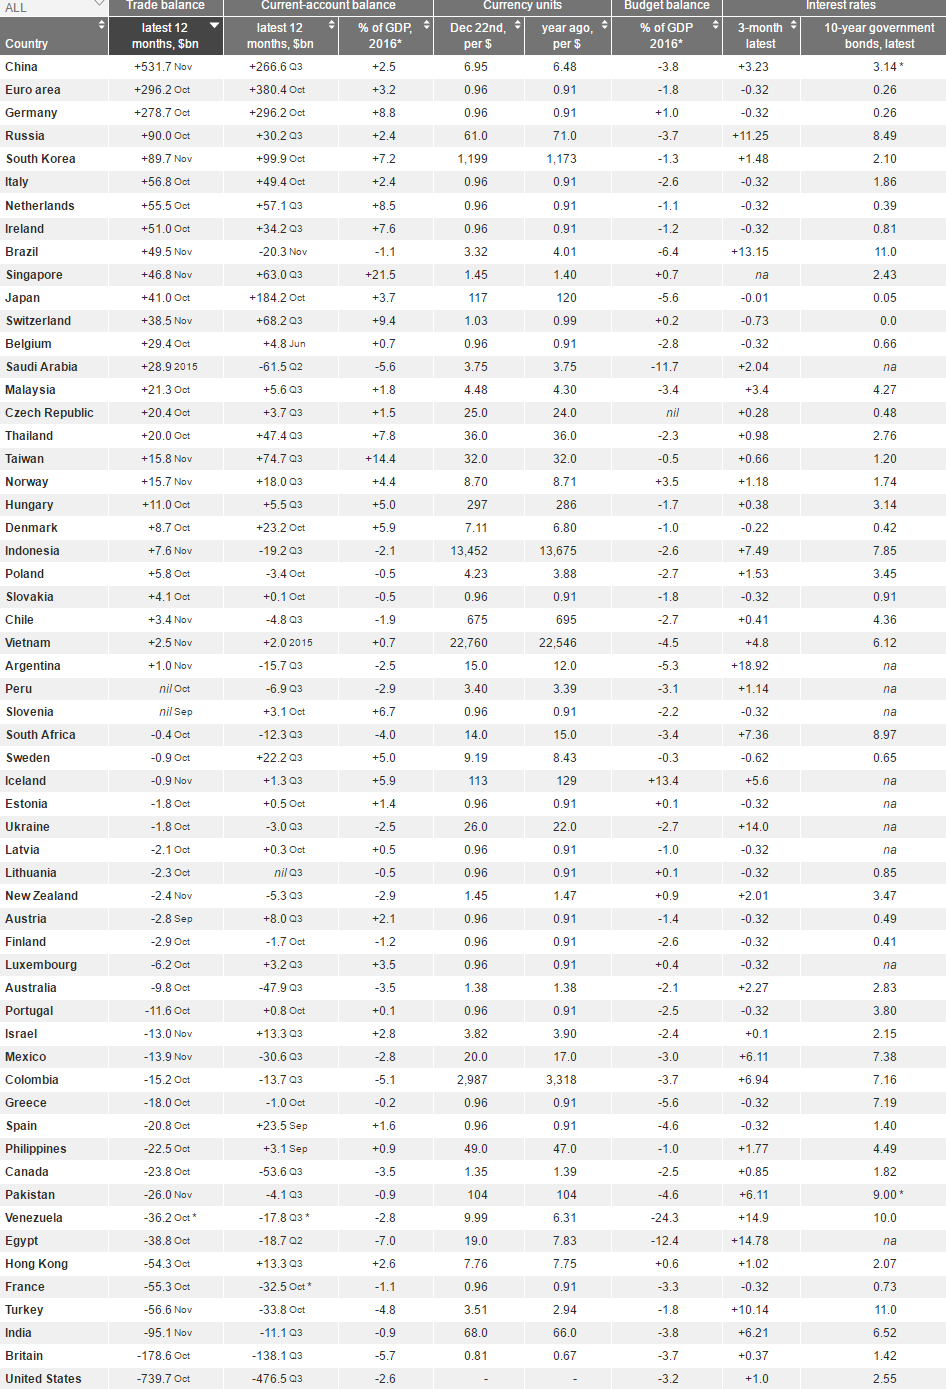 نرخ رشد منفی برزیل/ بهره بانکی سوئیس همچنان منفی/ ایران در بین 6 کشور دنیا با تورم بالا